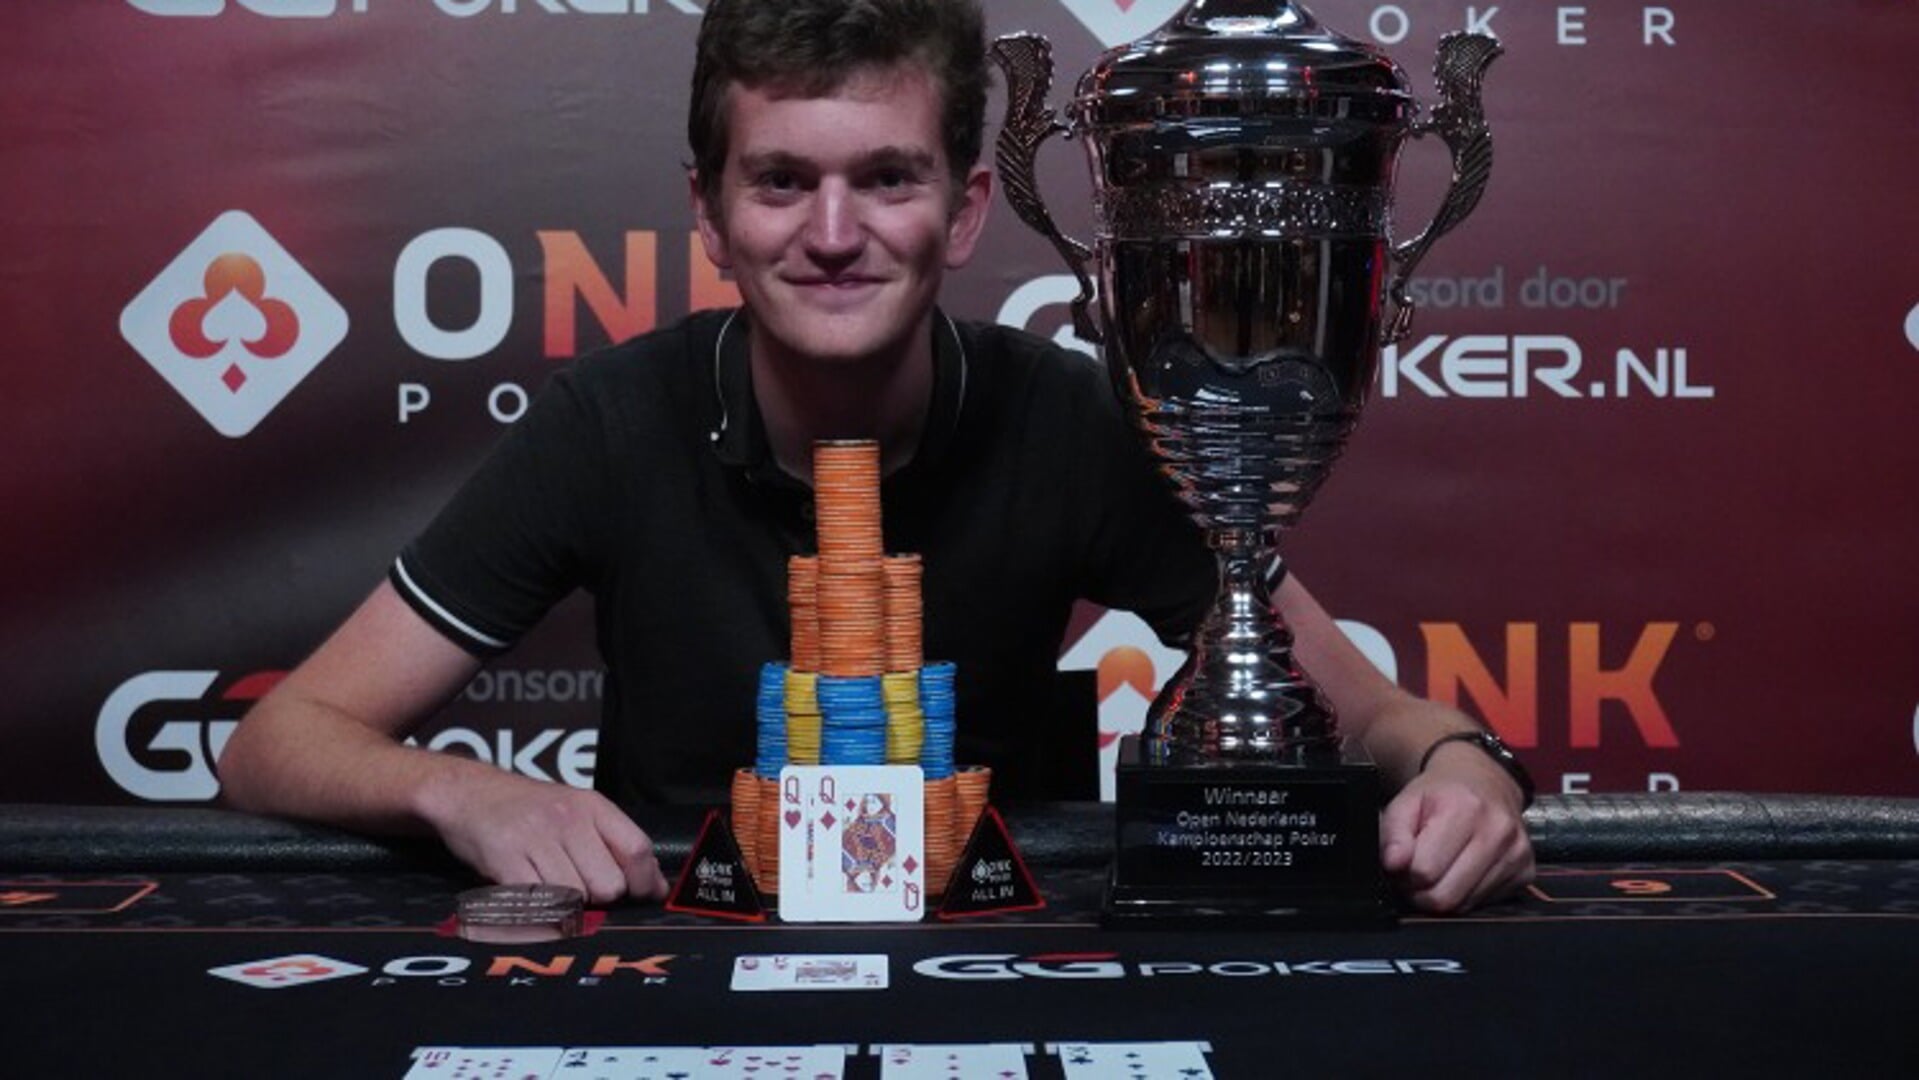 Germ de Haas is de Pokerkampioen van Nederland 2022/2023.